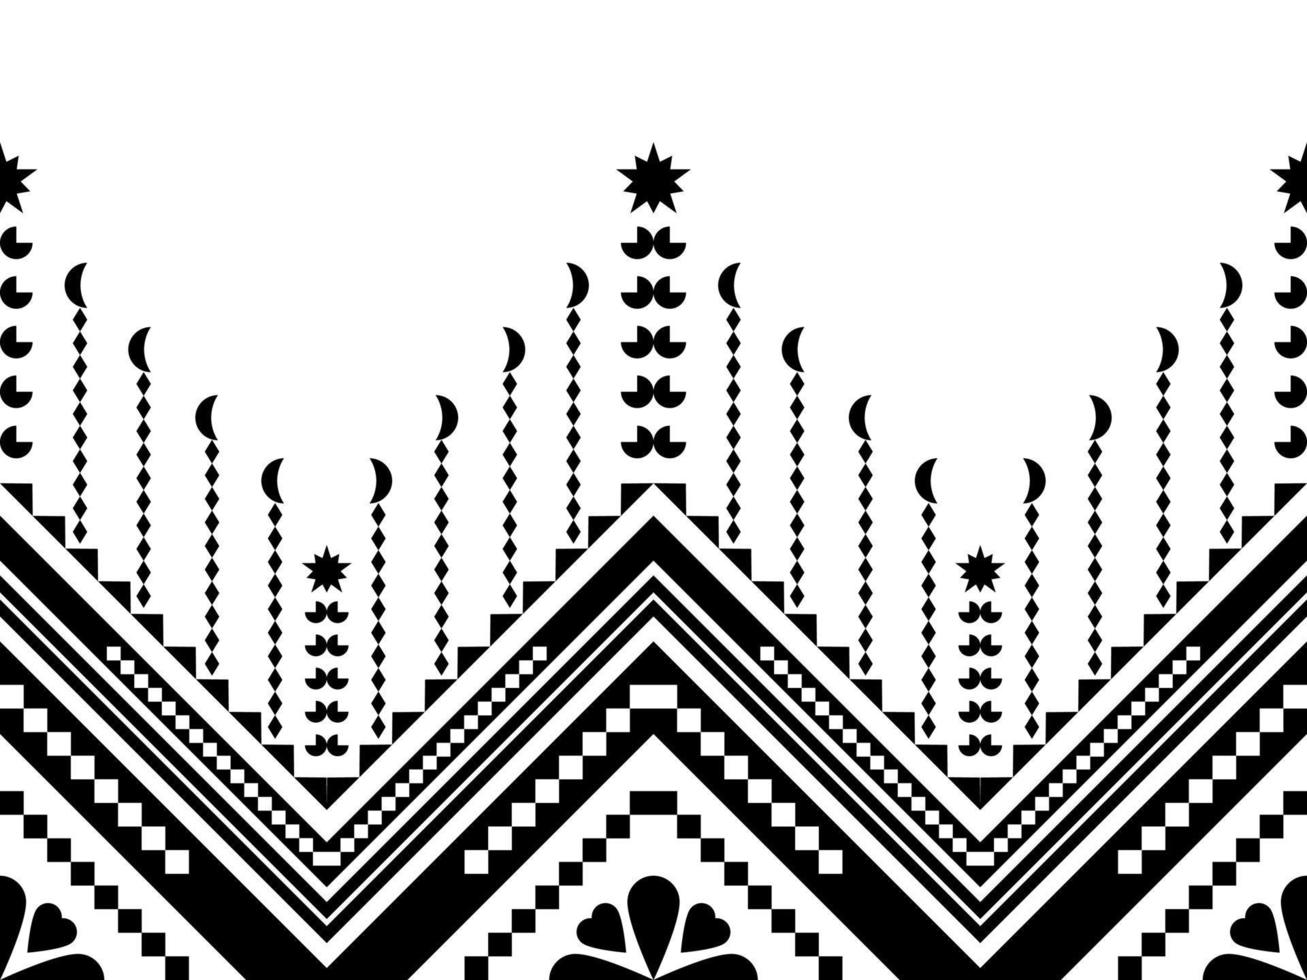 disegno geometrico astratto etnico per sfondo o carta da parati. disegno geometrico etnico del modello di stampa azteco trama di sfondo ripetuta in bianco e nero. tessuto, disegno del panno, avvolgimento vettore